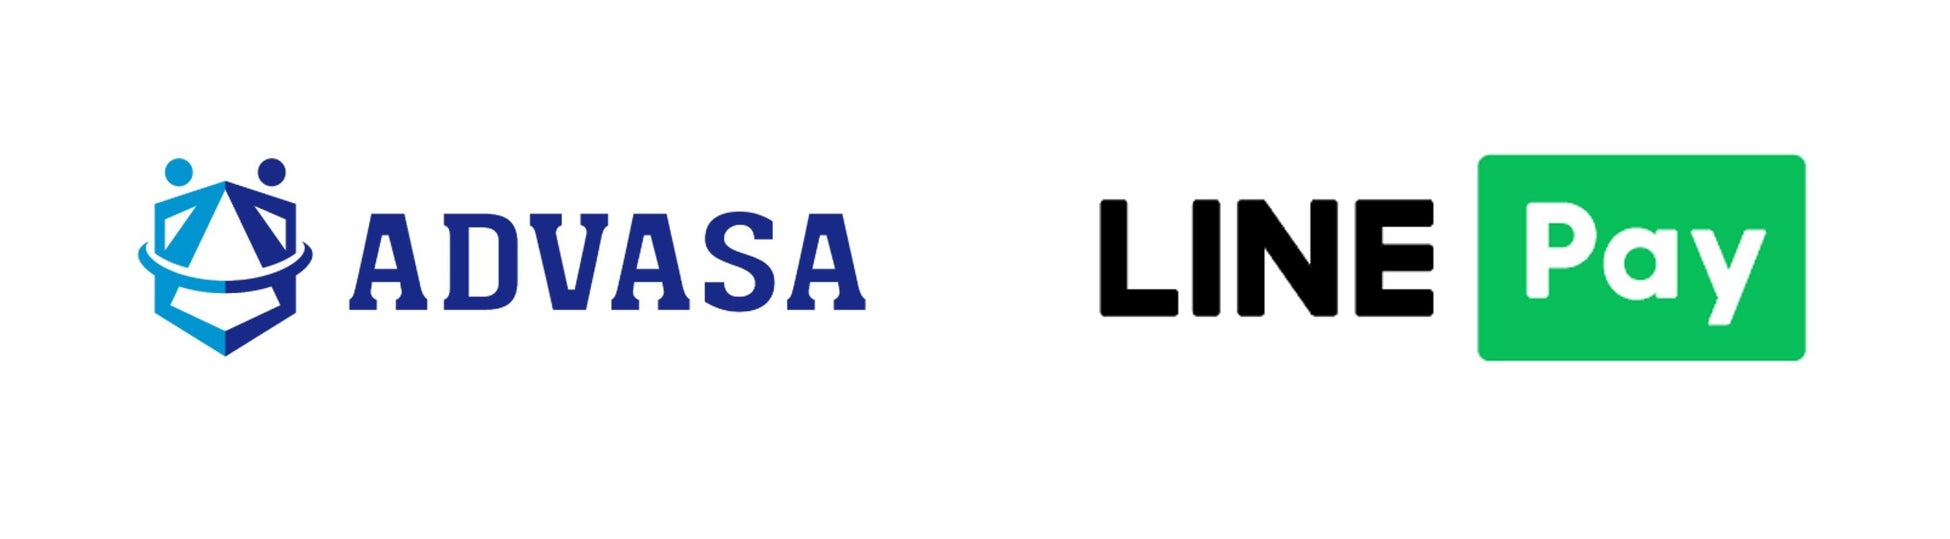 ADVASAとLINE Payが新たなチャージスキームをスタート一定期間LINE Payチャージ手数料をADVASAが負担し、実質チャージ手数料を無料にて提供